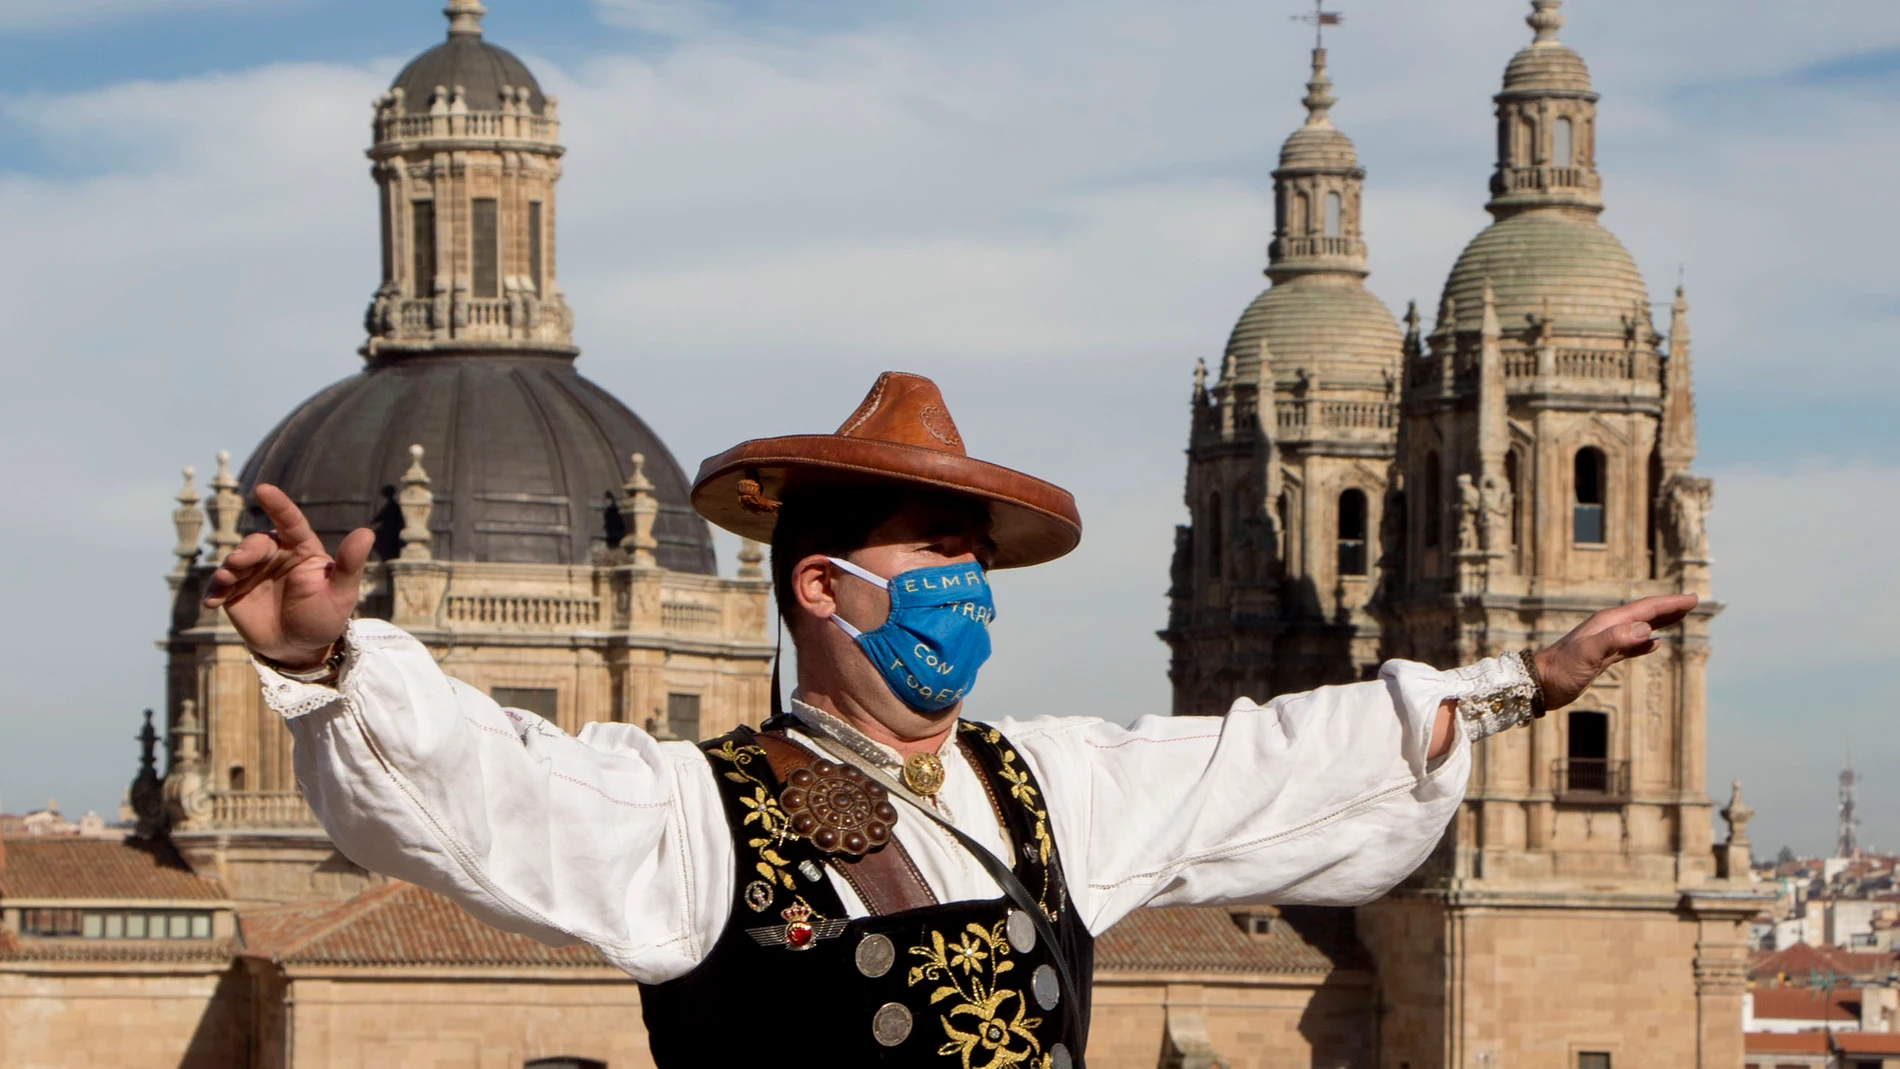 El folclorista salmantino Ángel Rufino de Haro, ''El Mariquelo'', realiza su tradicional subida a la torre de las campanas de la Catedral de Salamanca.